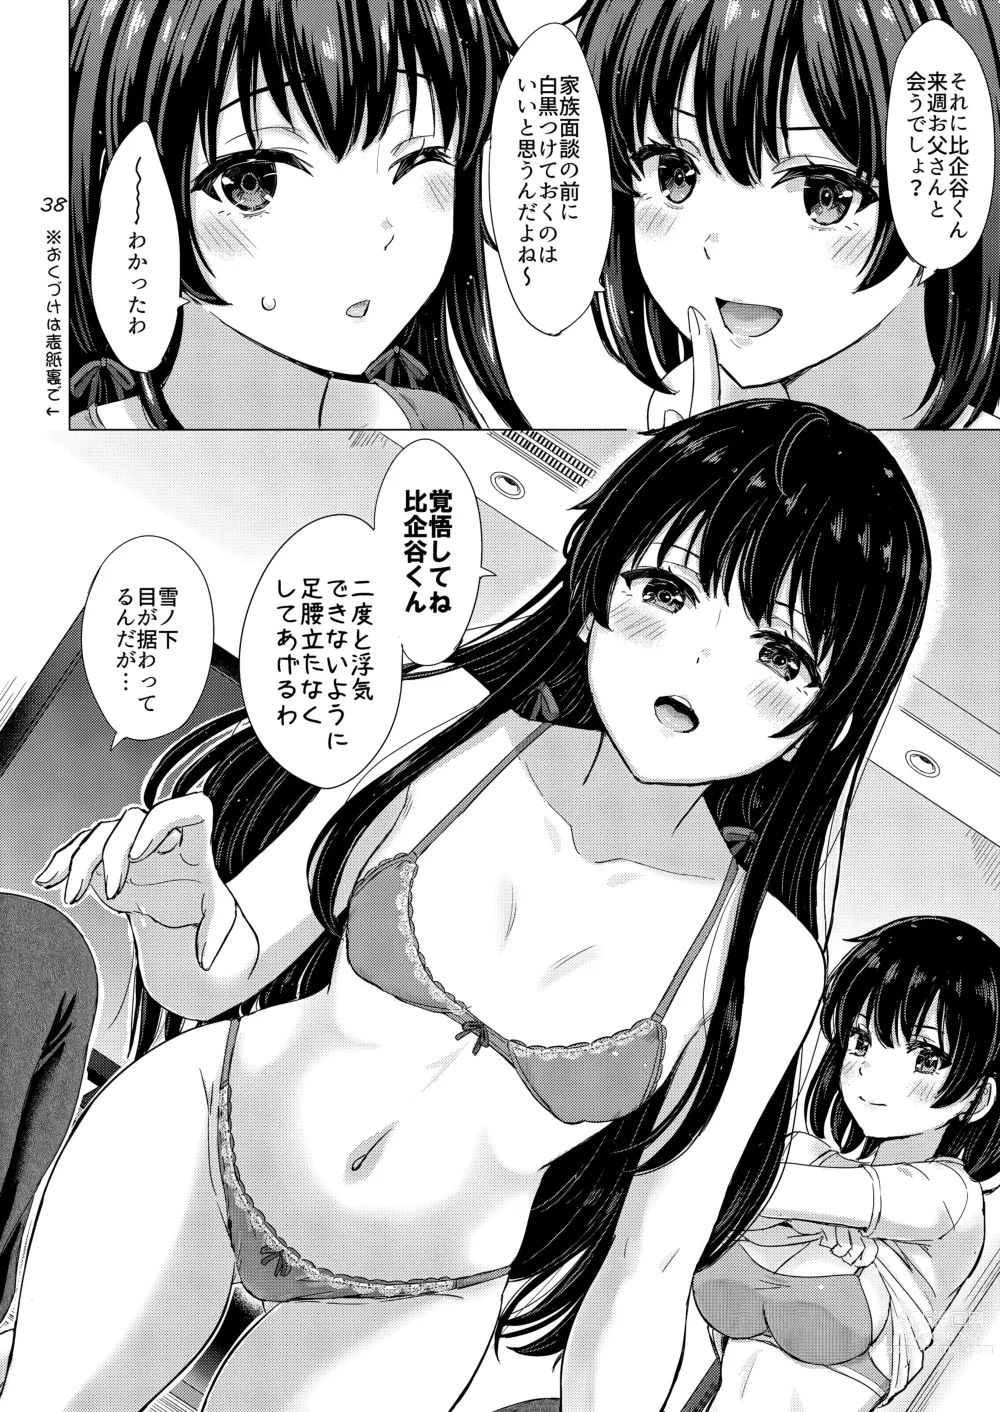 Page 37 of doujinshi Yukinoshita Shimai to Iyarashii Futari no Himegoto. - The Yukinoshita sisters each have sex with hachiman.